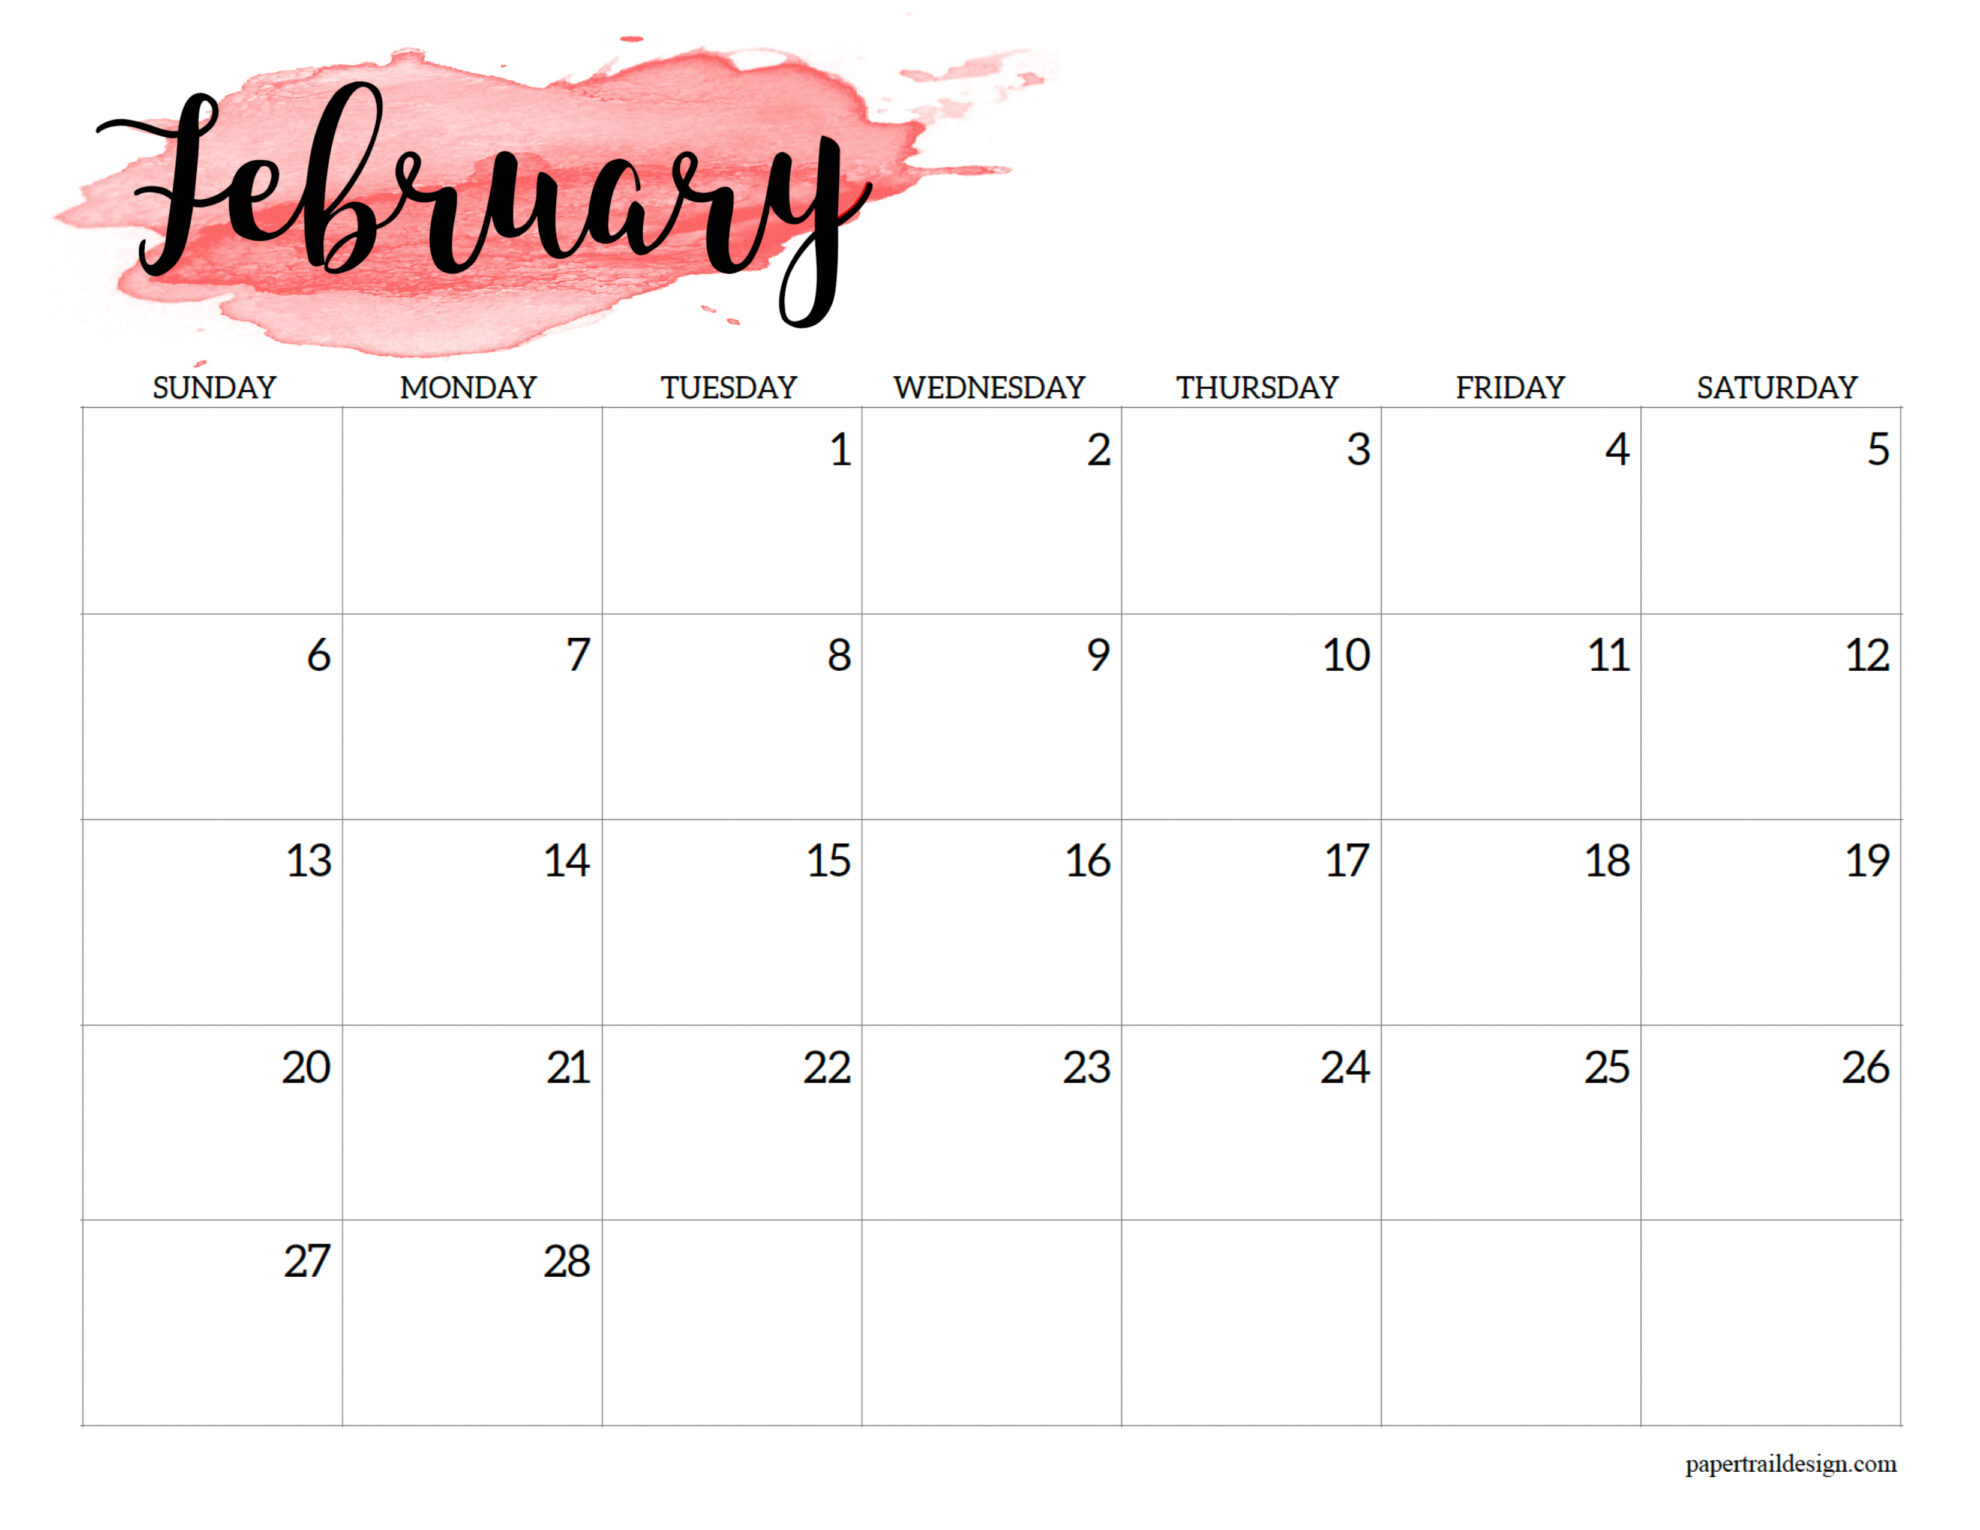 Feb Printable Calendar 2022 2022 Calendar Printable - Watercolor - Paper Trail Design